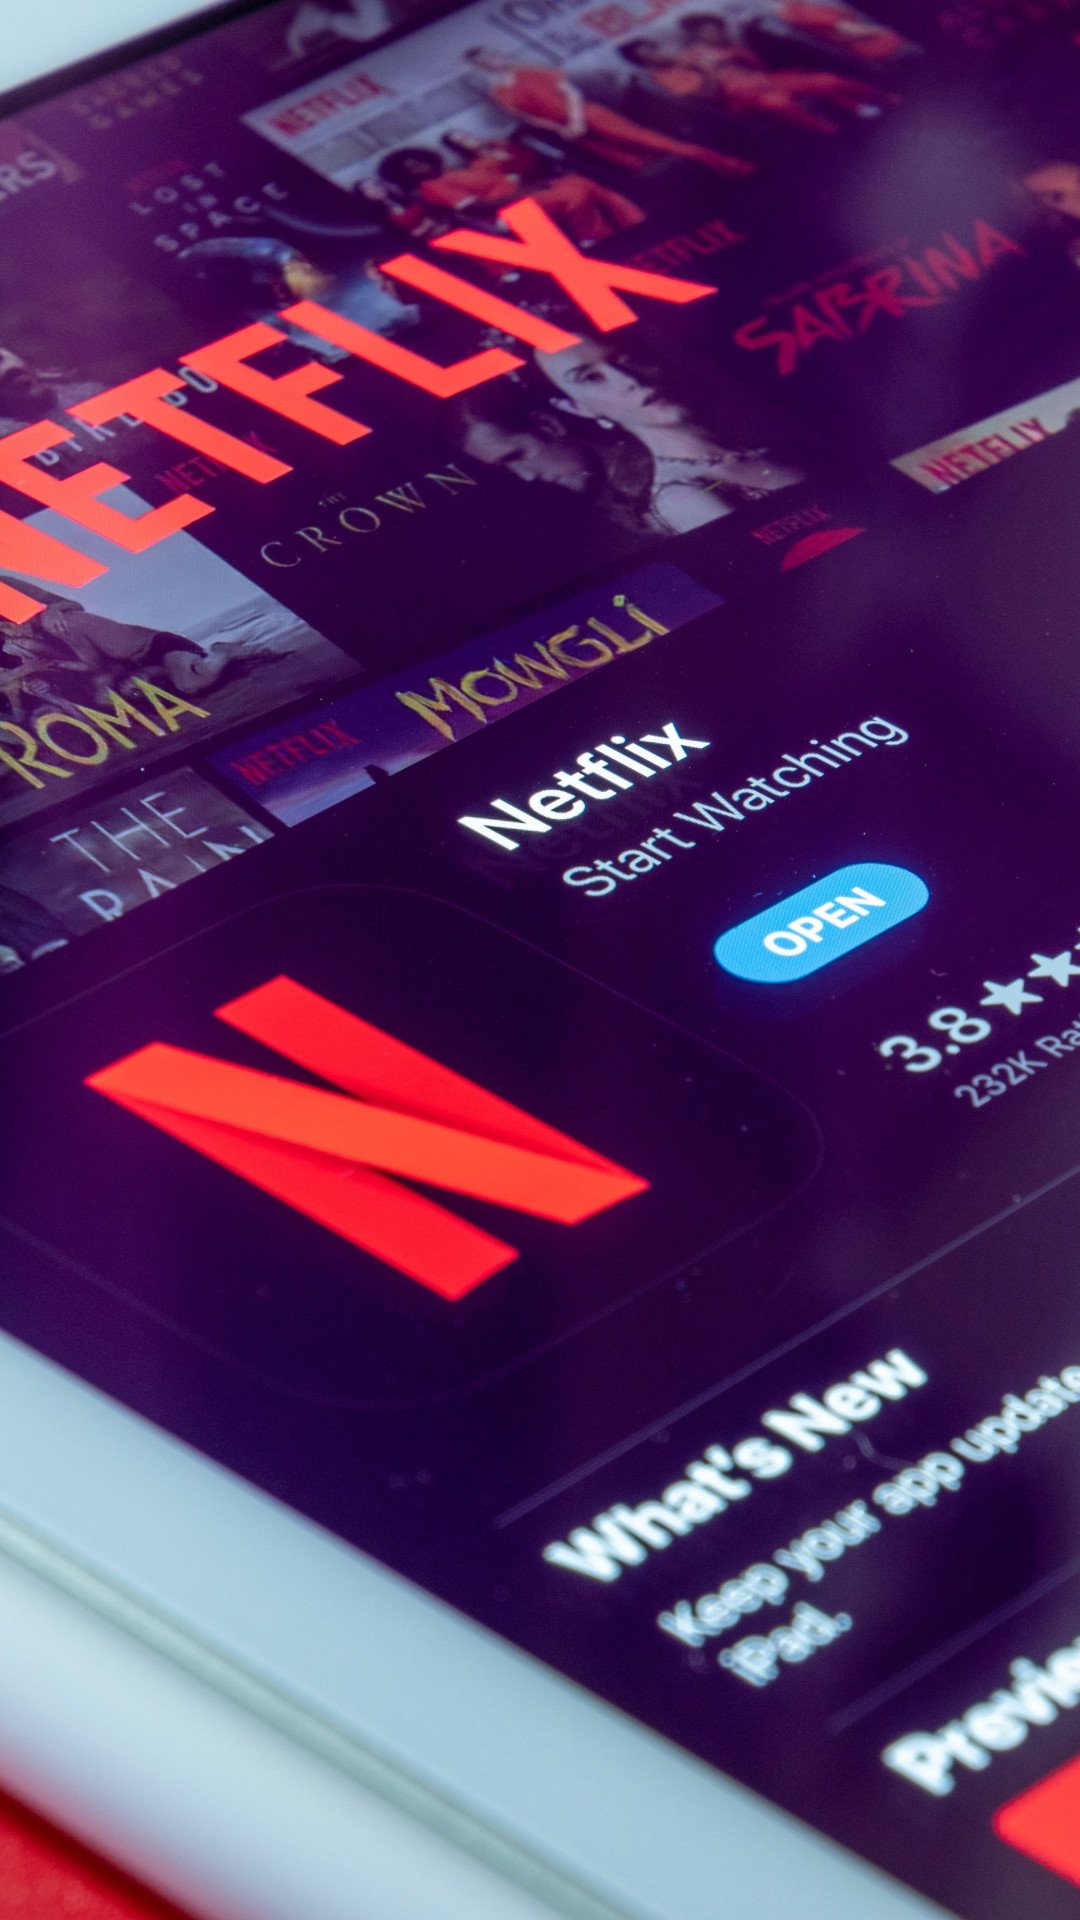 Netflix vai acabar com o compartilhamento de senhas? O que se sabe até agora